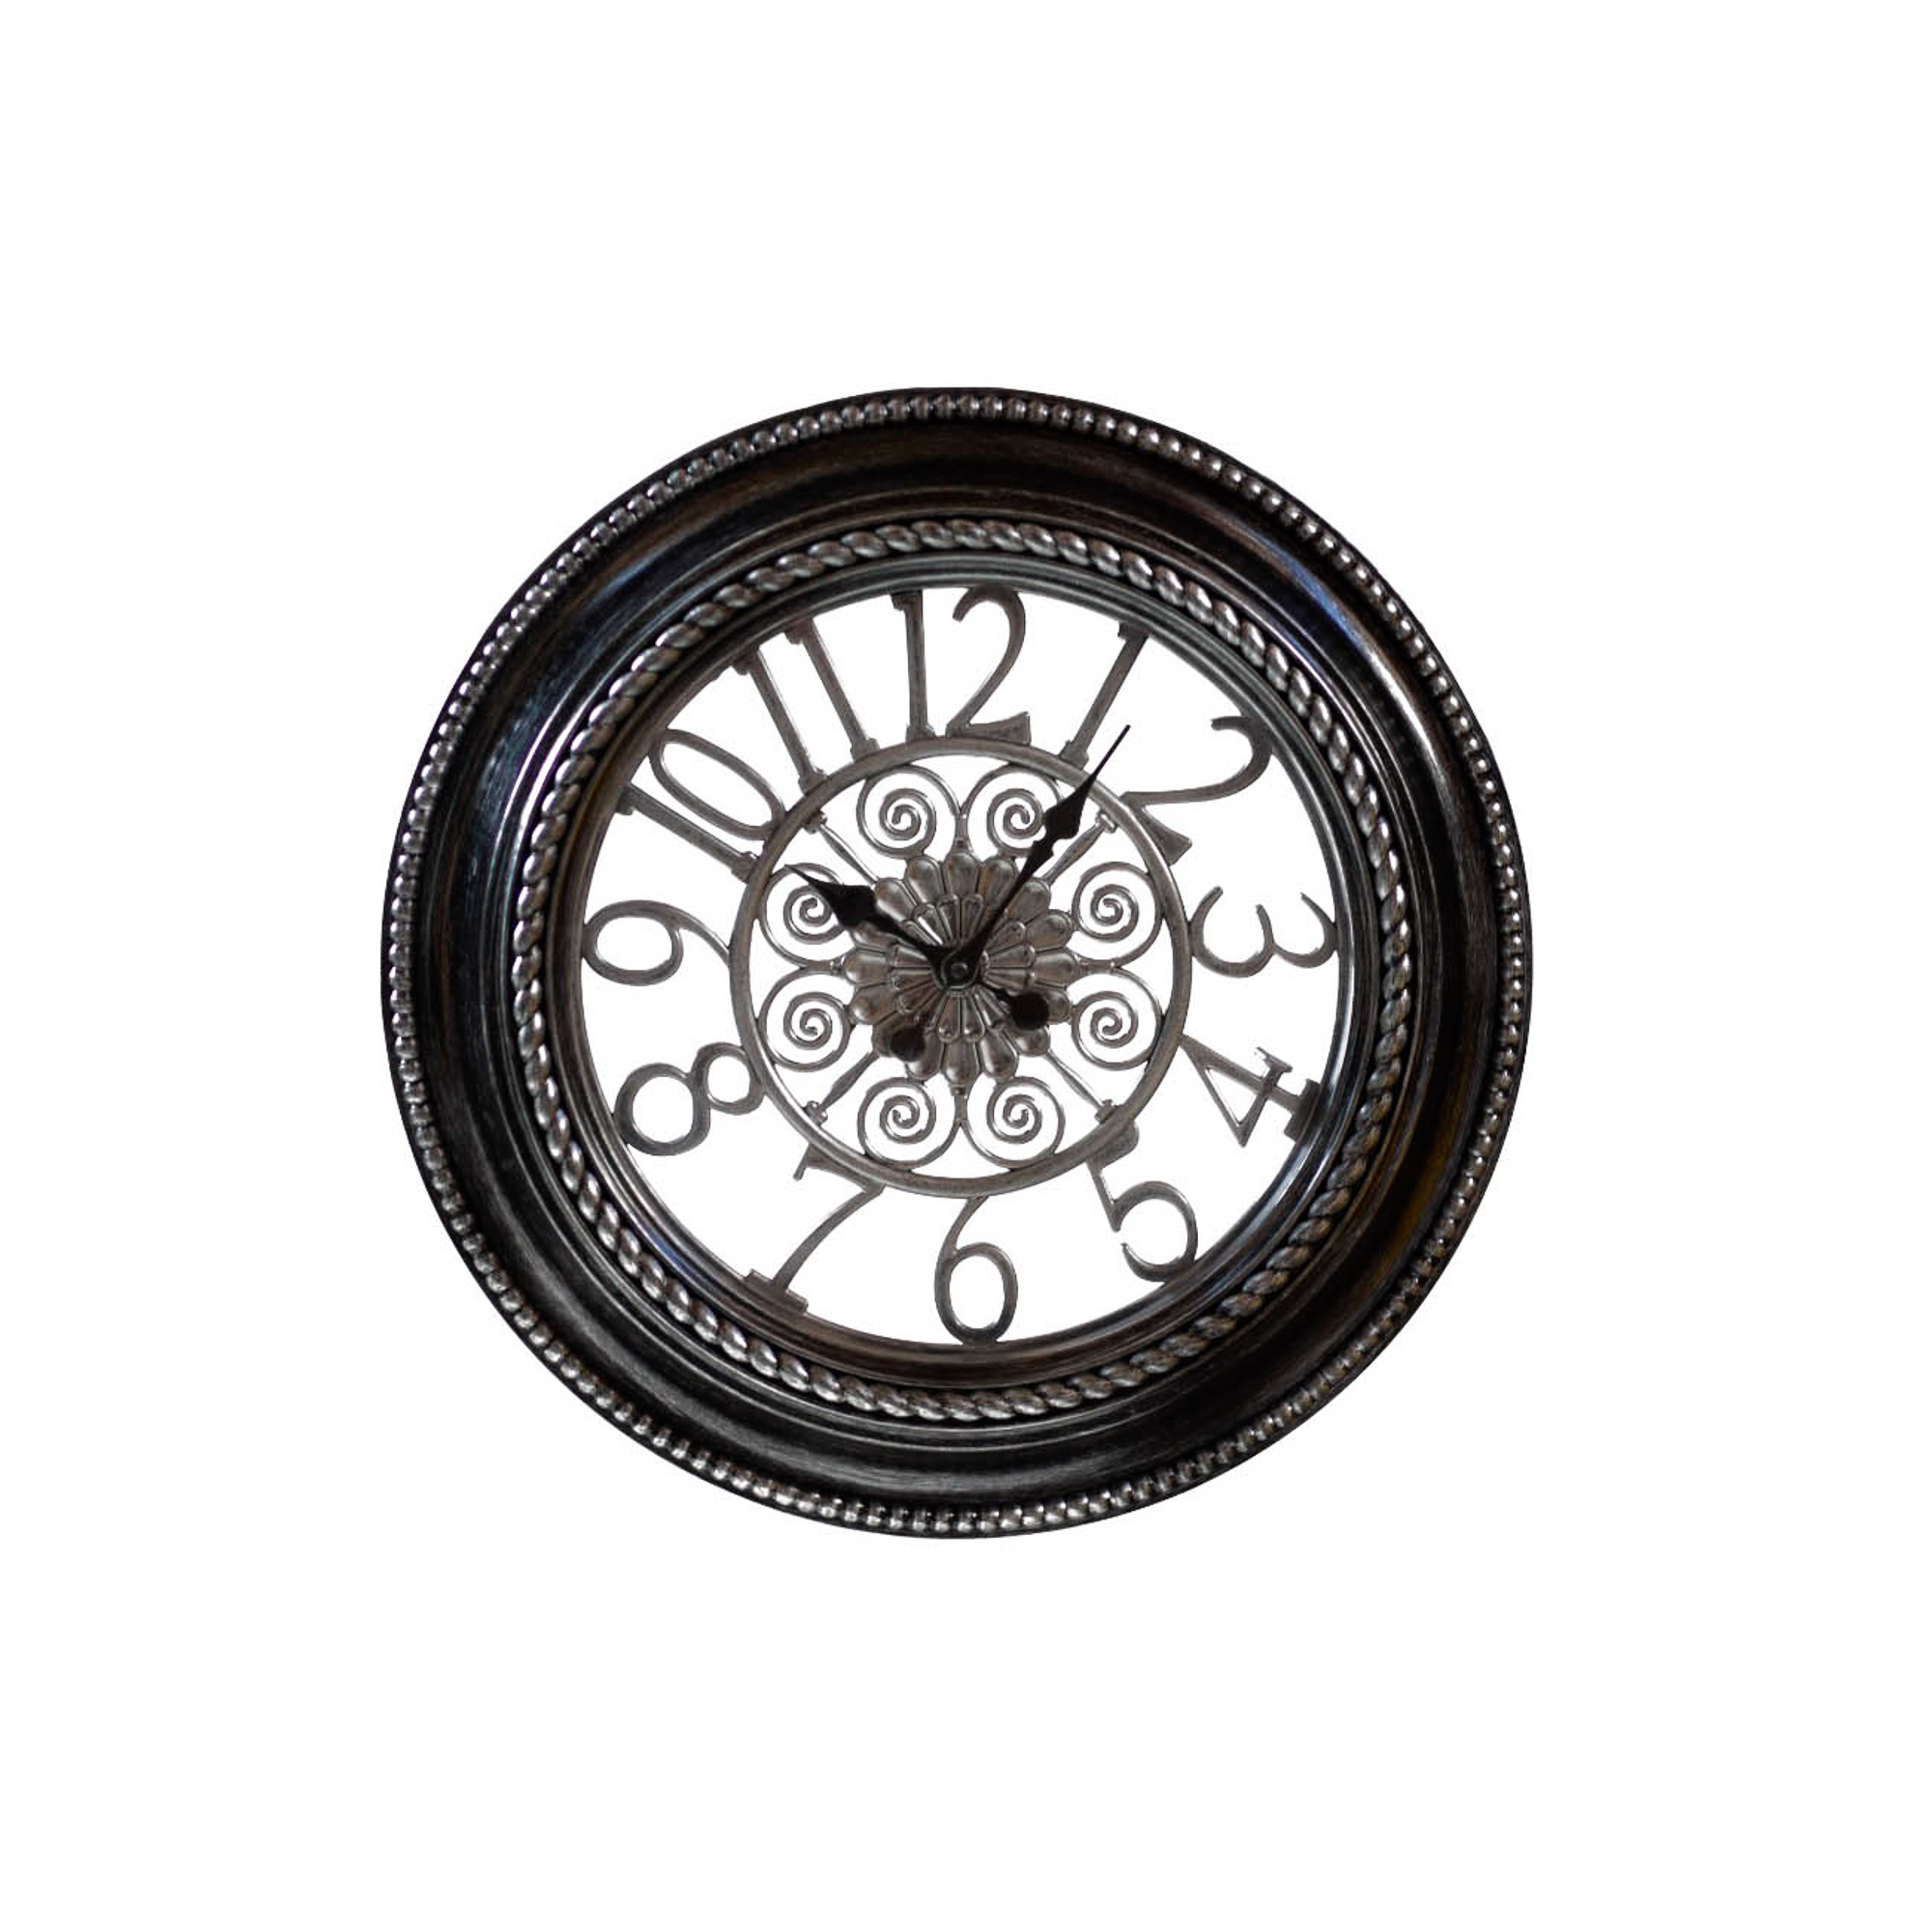 Часы настенные 50 см. Часы 334l Гарда декор. Настенные часы Garda Decor l1335. L334c часы настенные 50х5,8. Часы настенные (l1412c).